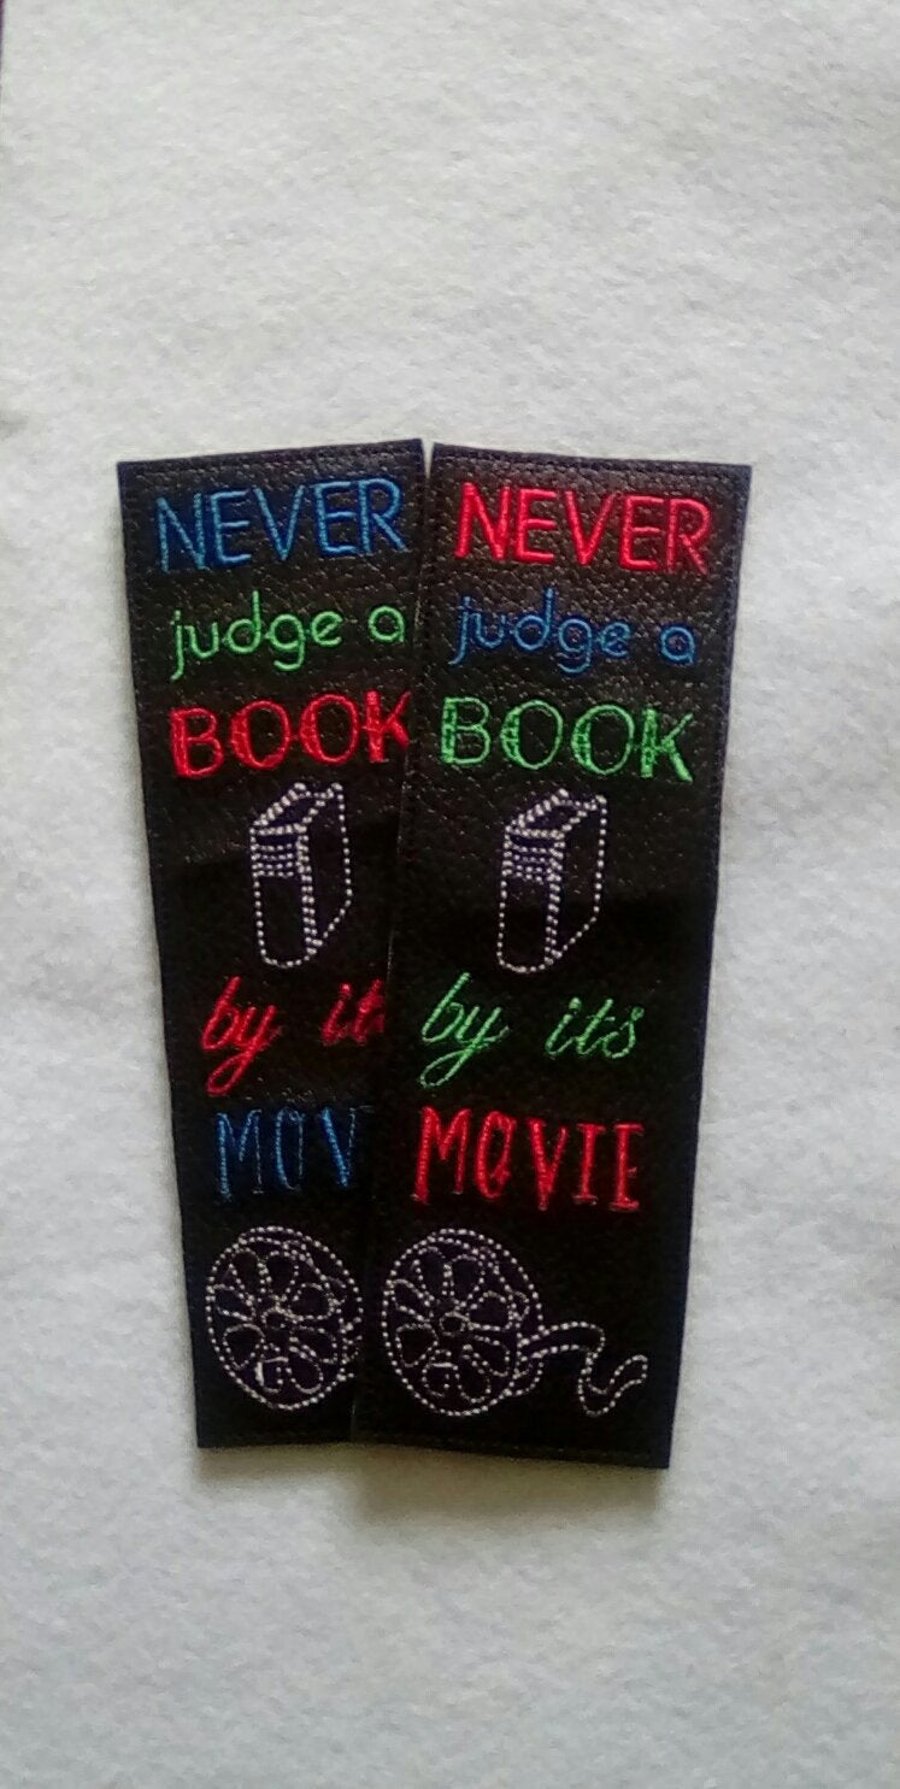 699. Movie bookmark.